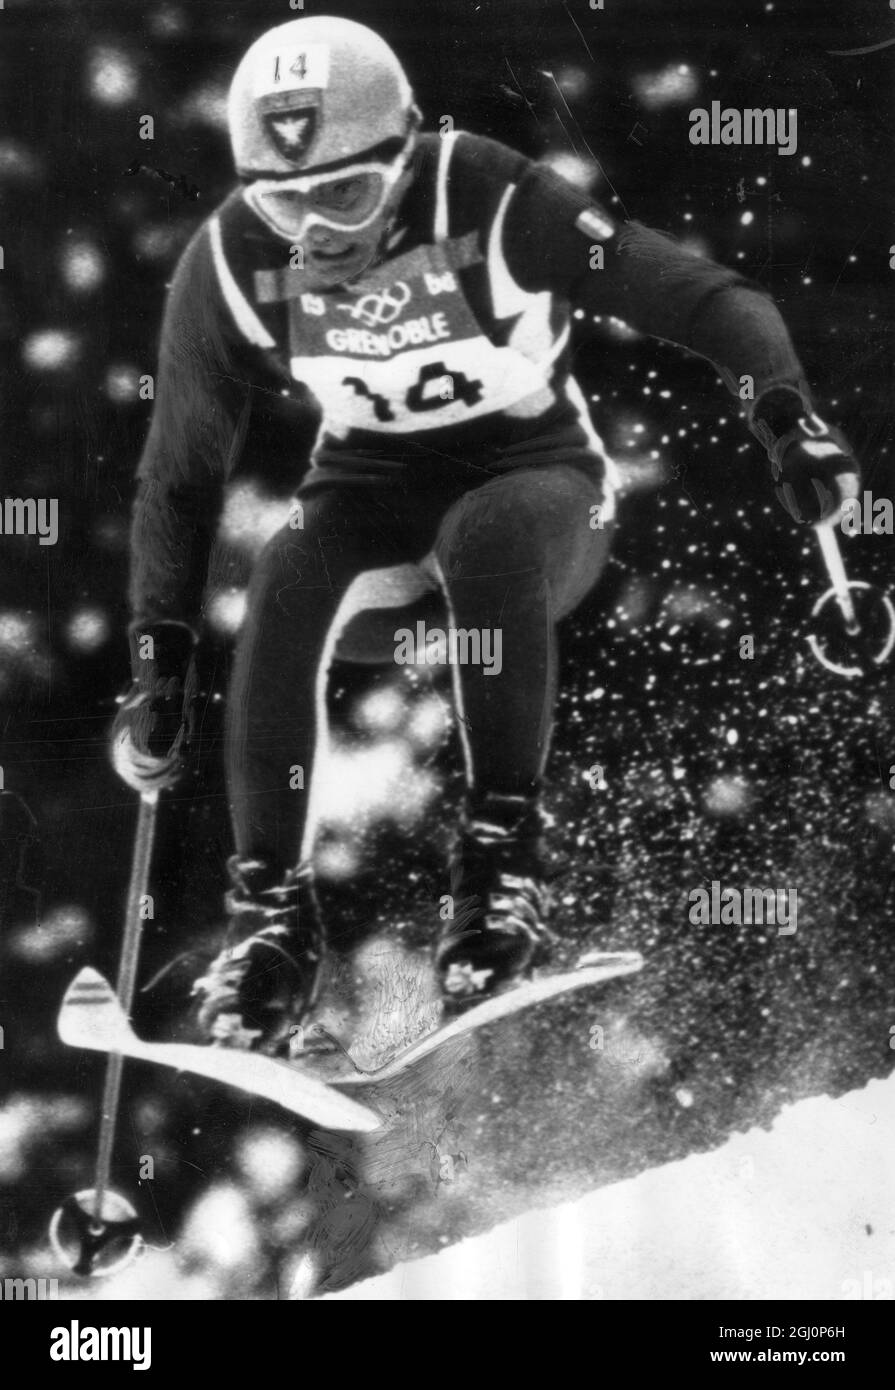 Jean-Claude Killy vola sulla neve sulla strada per vincere una medaglia d'oro olimpica Grenoble. 1968 Foto Stock